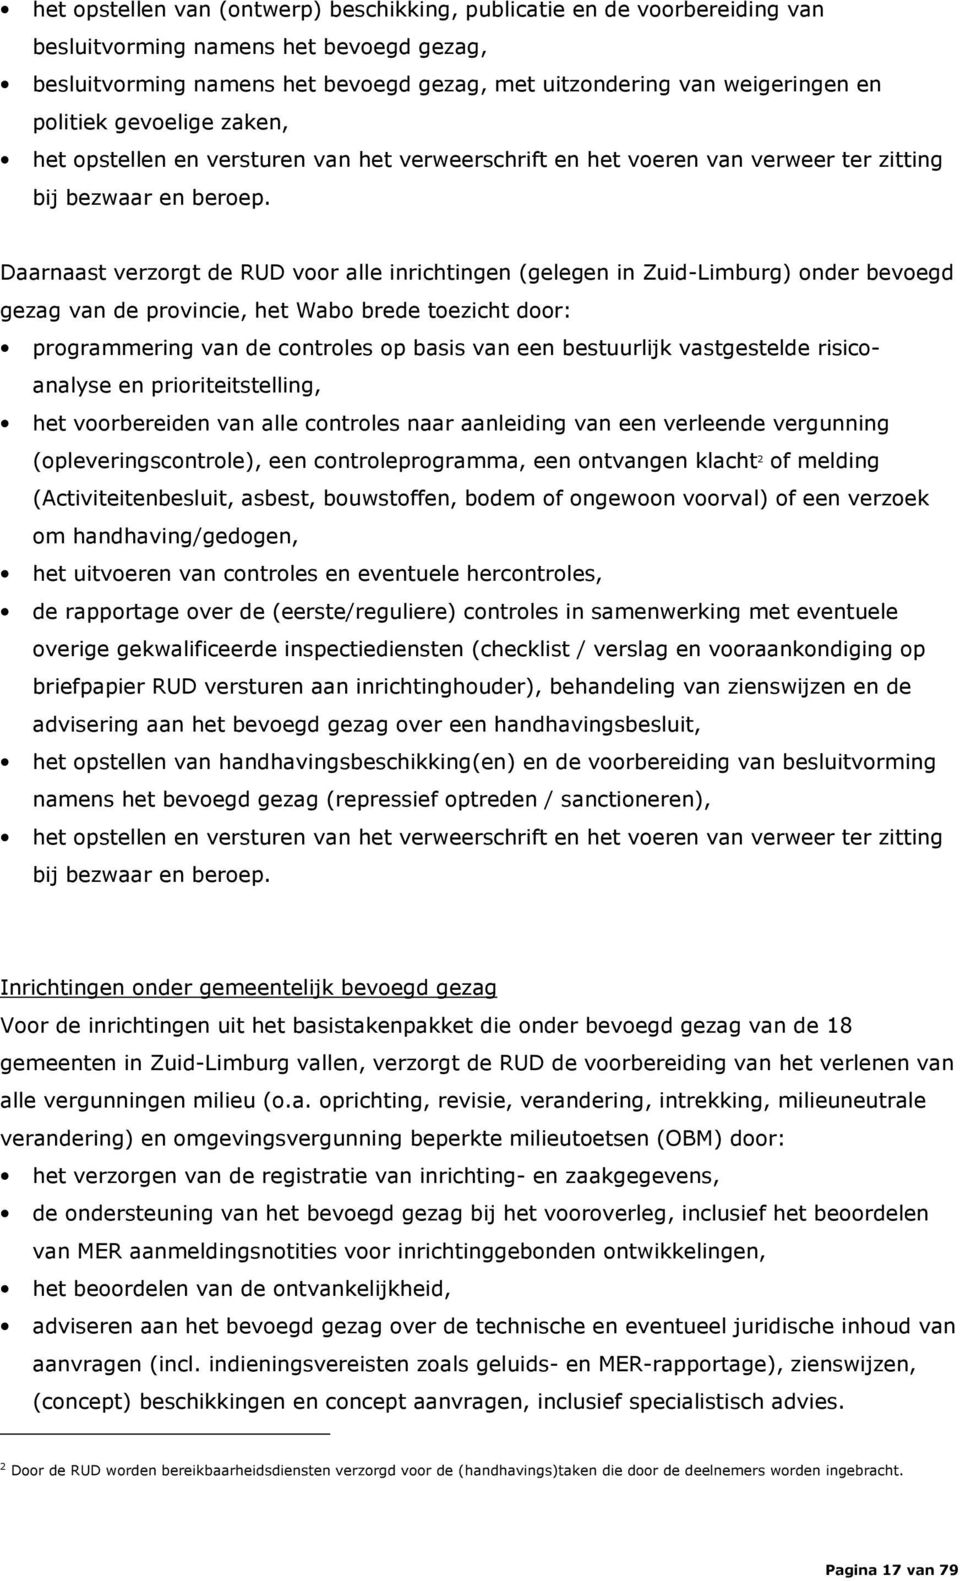 Daarnaast verzorgt de RUD voor alle inrichtingen (gelegen in Zuid-Limburg) onder bevoegd gezag van de provincie, het Wabo brede toezicht door: programmering van de controles op basis van een